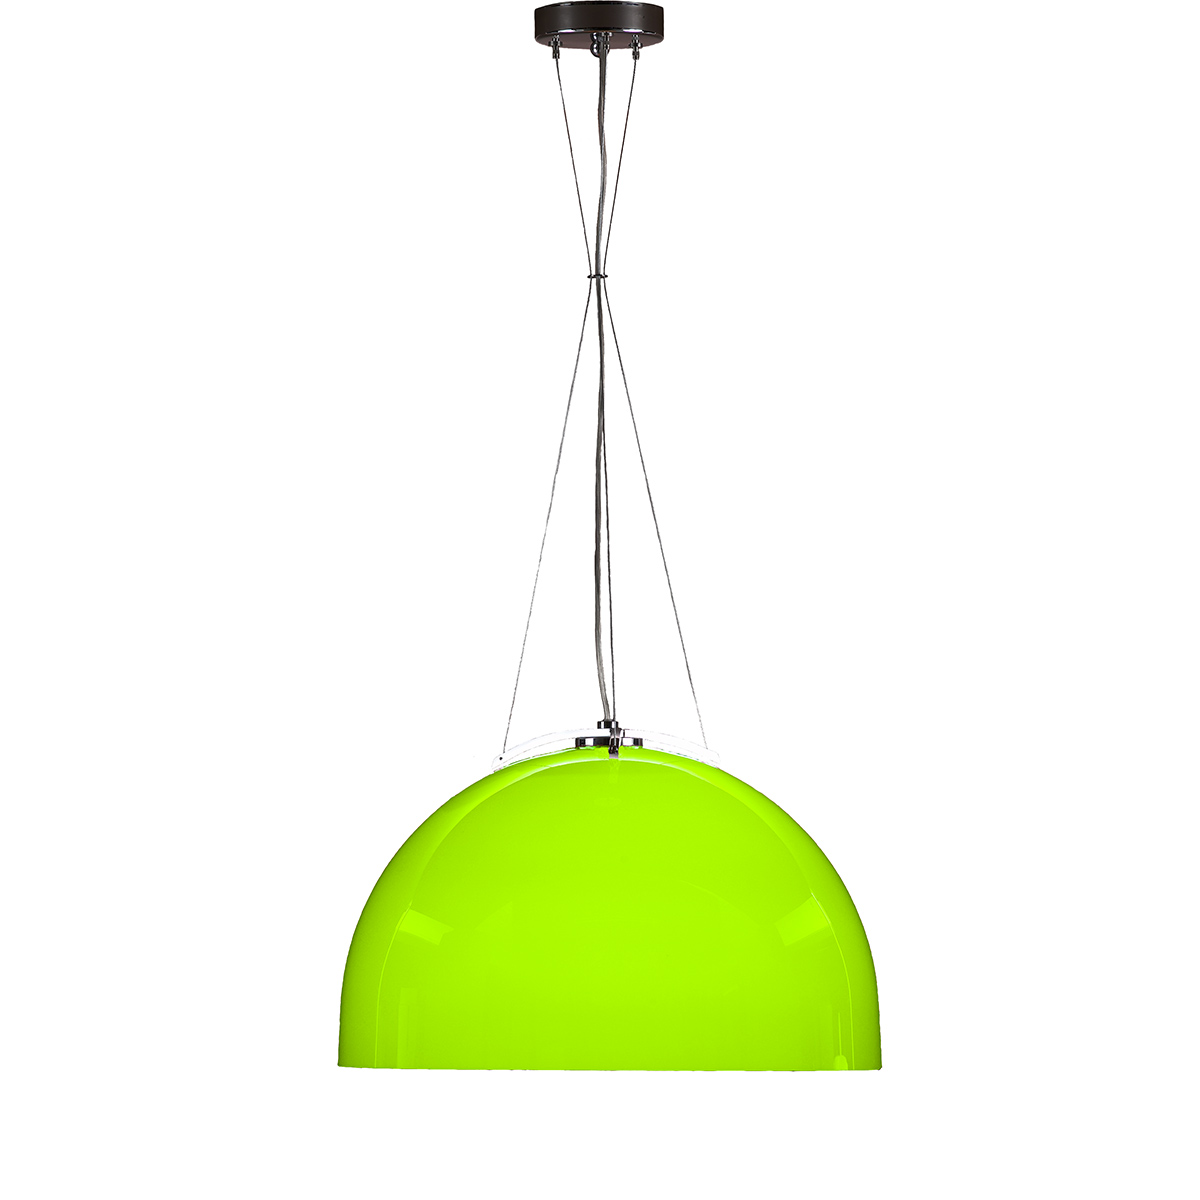 Φωτιστικό μονόφωτο Μουράνο πράσινο MARS modern green Murano suspension lamp